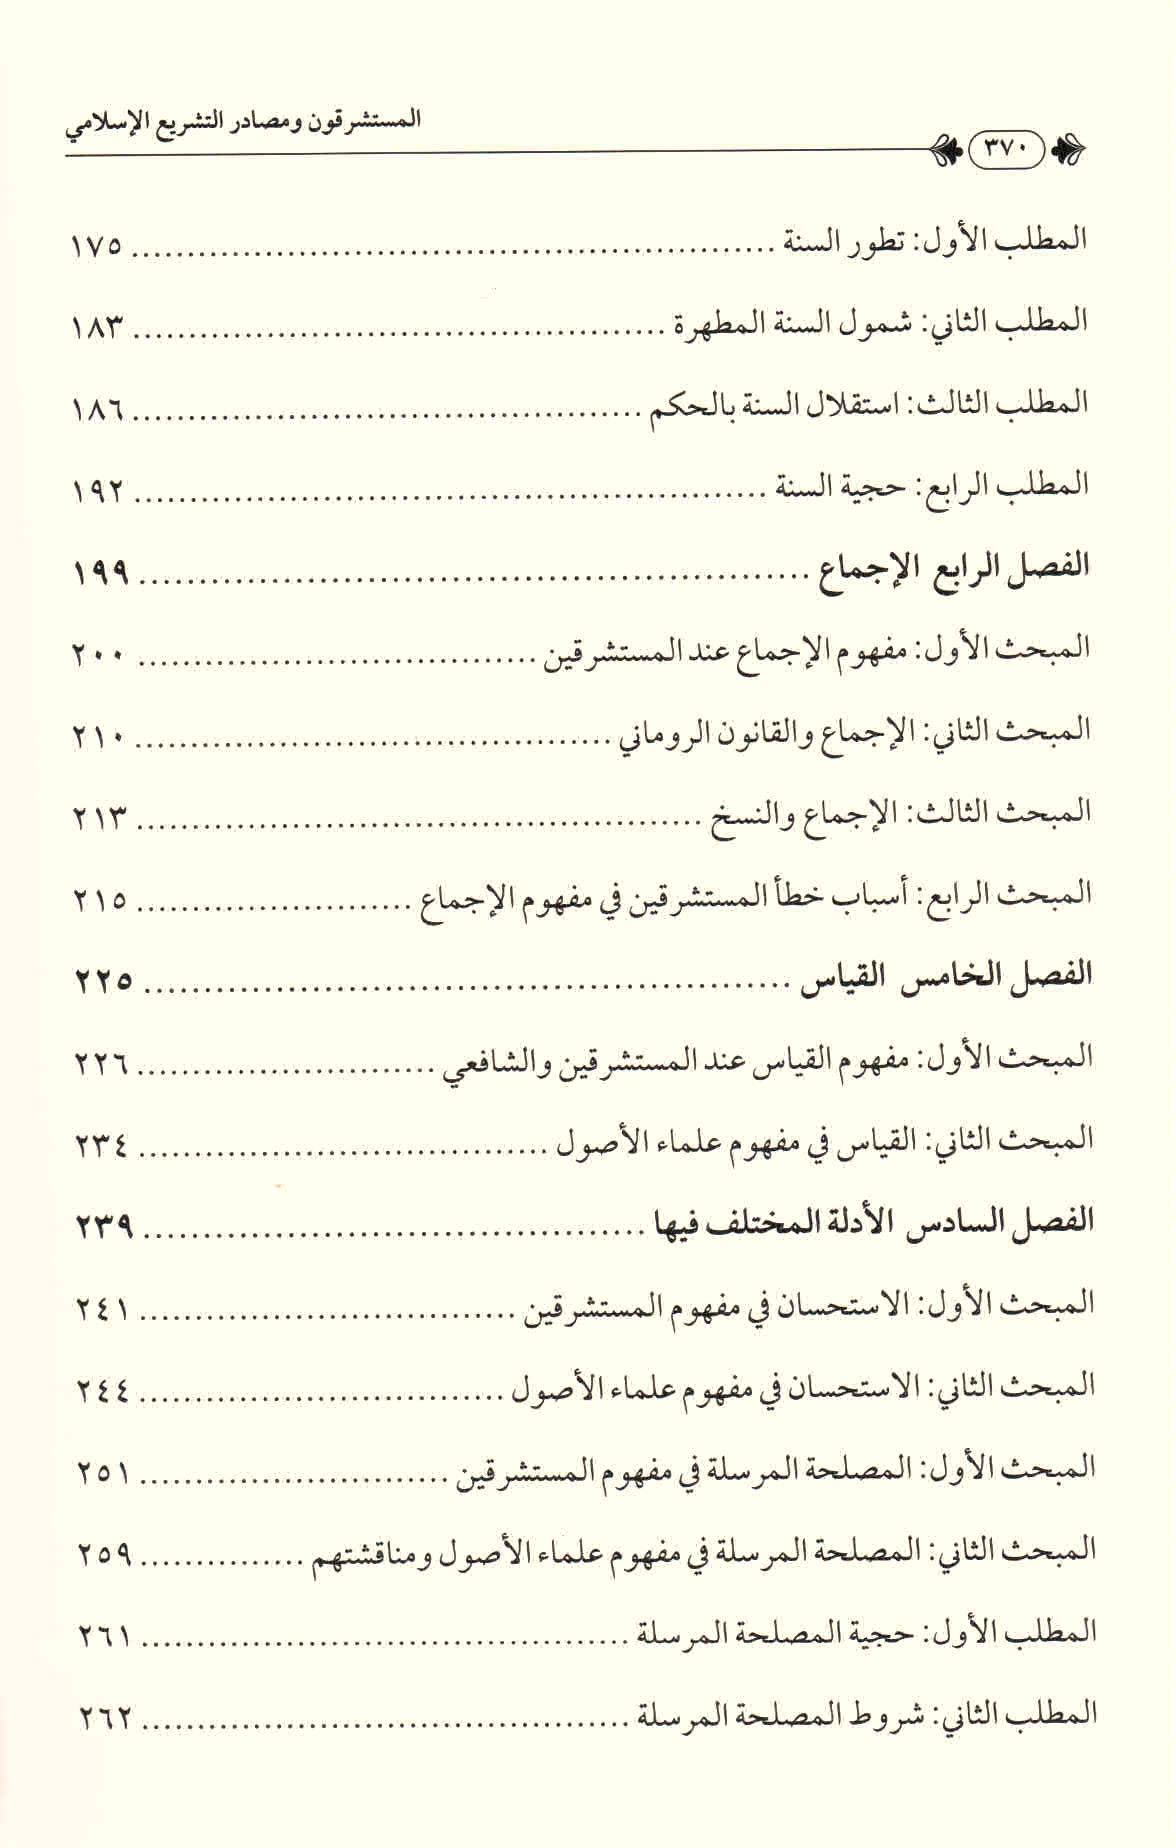 ص. 370 قائمة محتويات كتاب المستشرقون ومصادر التشريع الإسلامي.